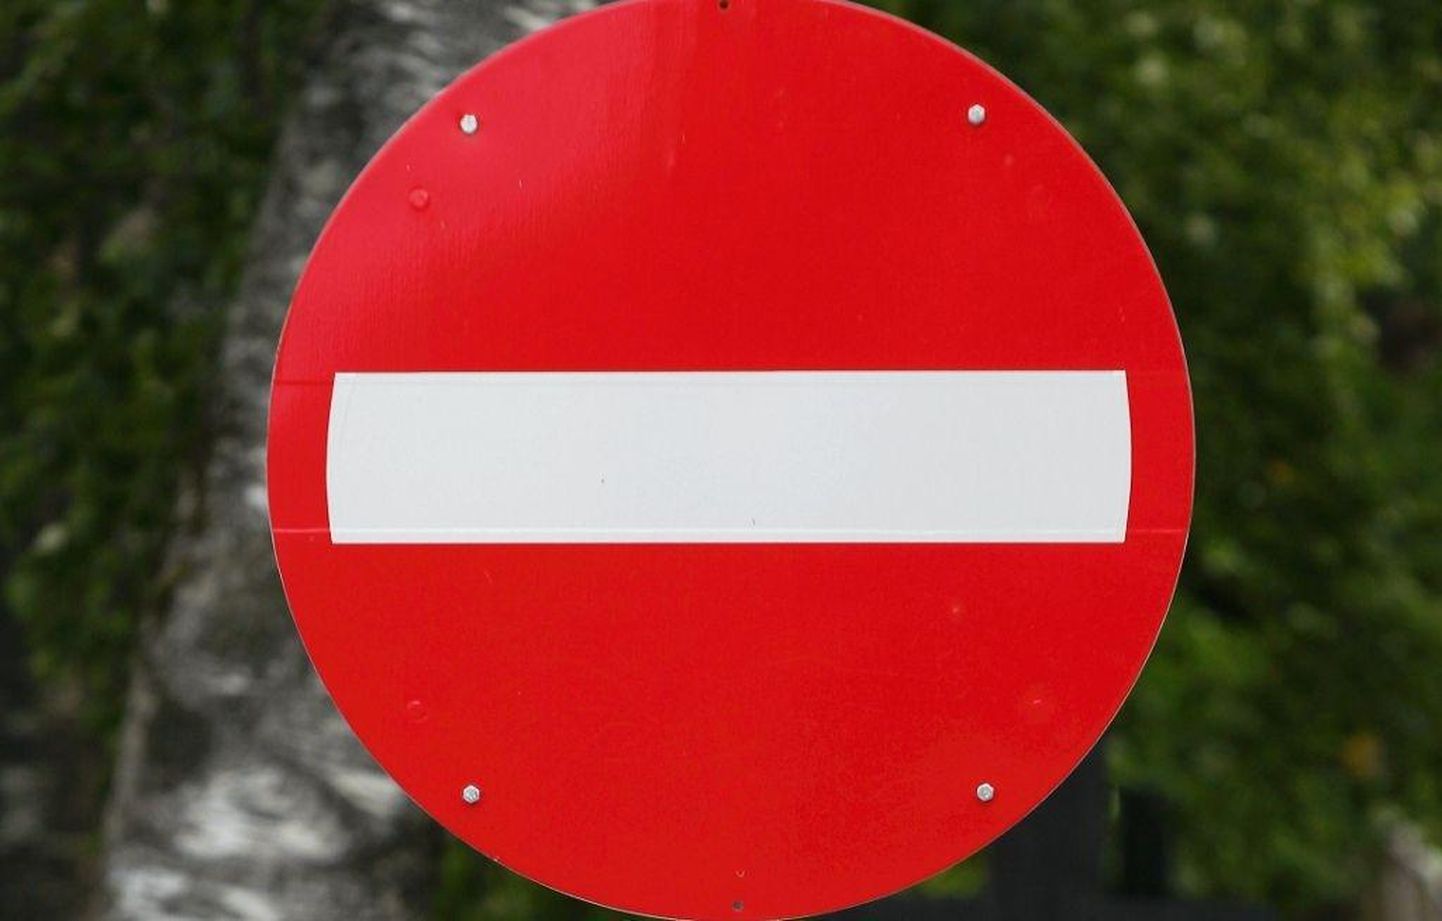 Liiklusmärk "Sissesõidu keeld", mida rahvasuus telliskiviks hüütakse.